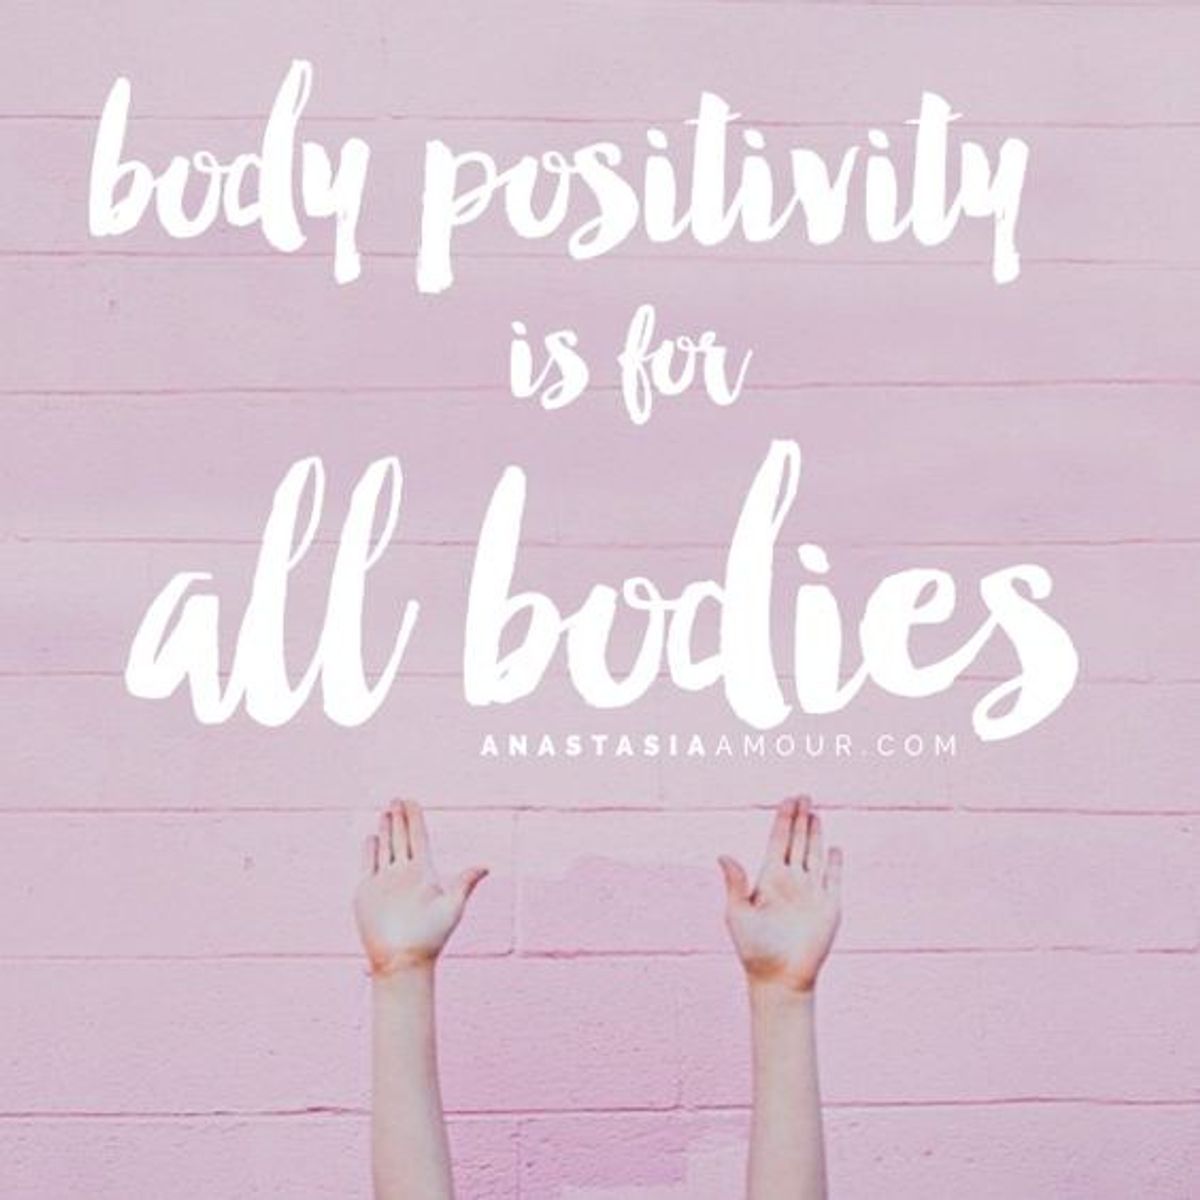 Let's Talk About Body Positivity